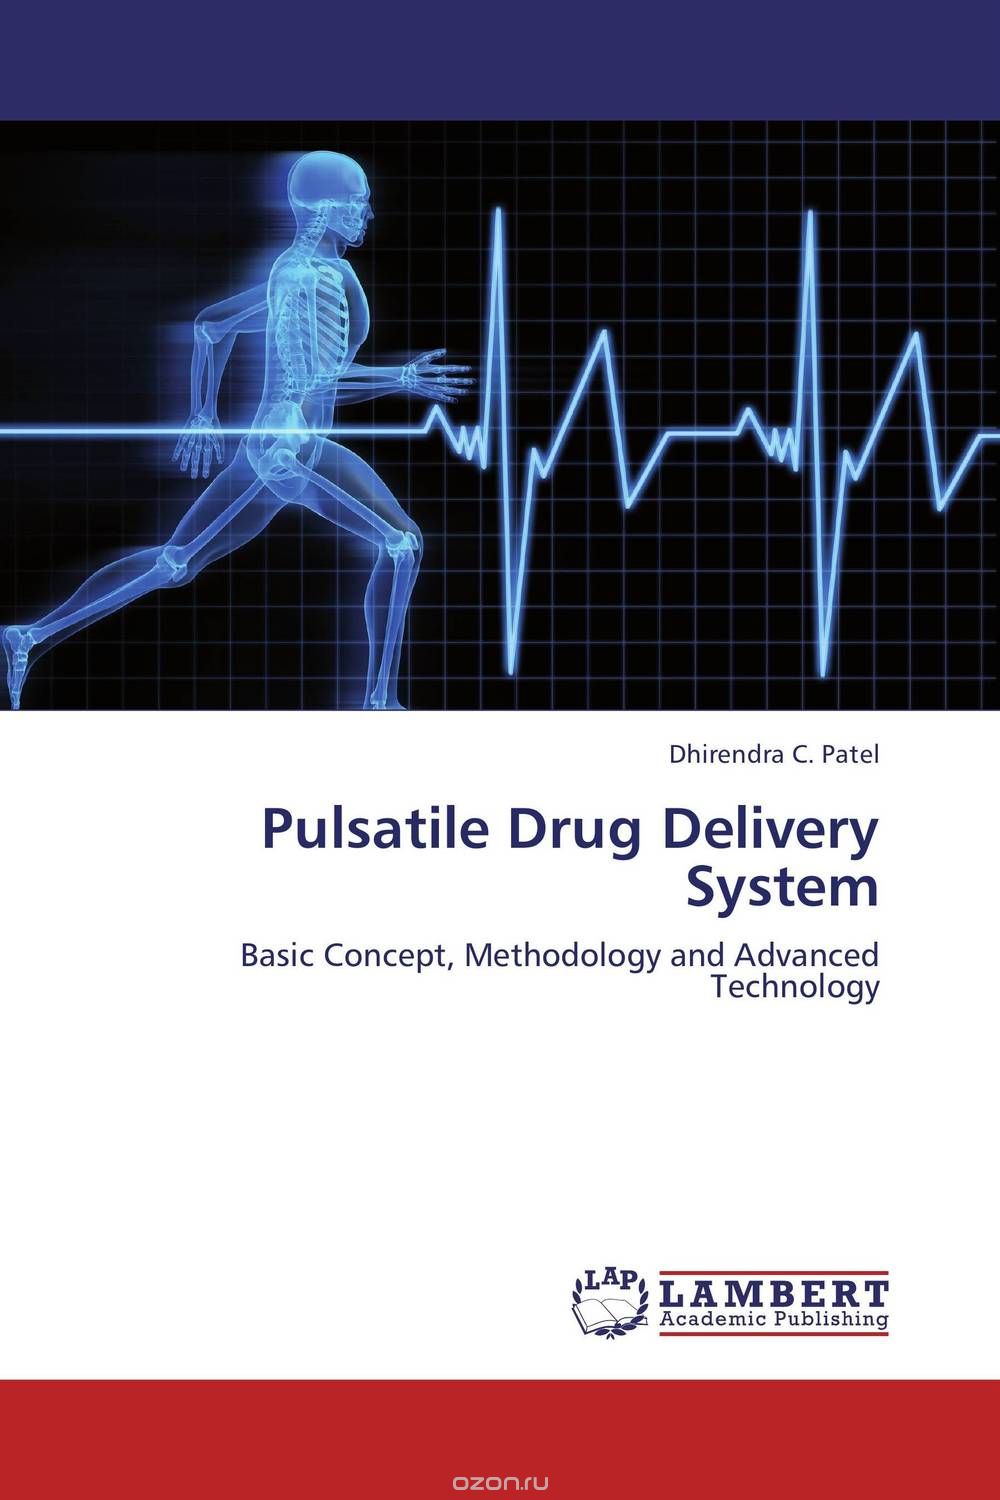 Скачать книгу "Pulsatile Drug Delivery System"